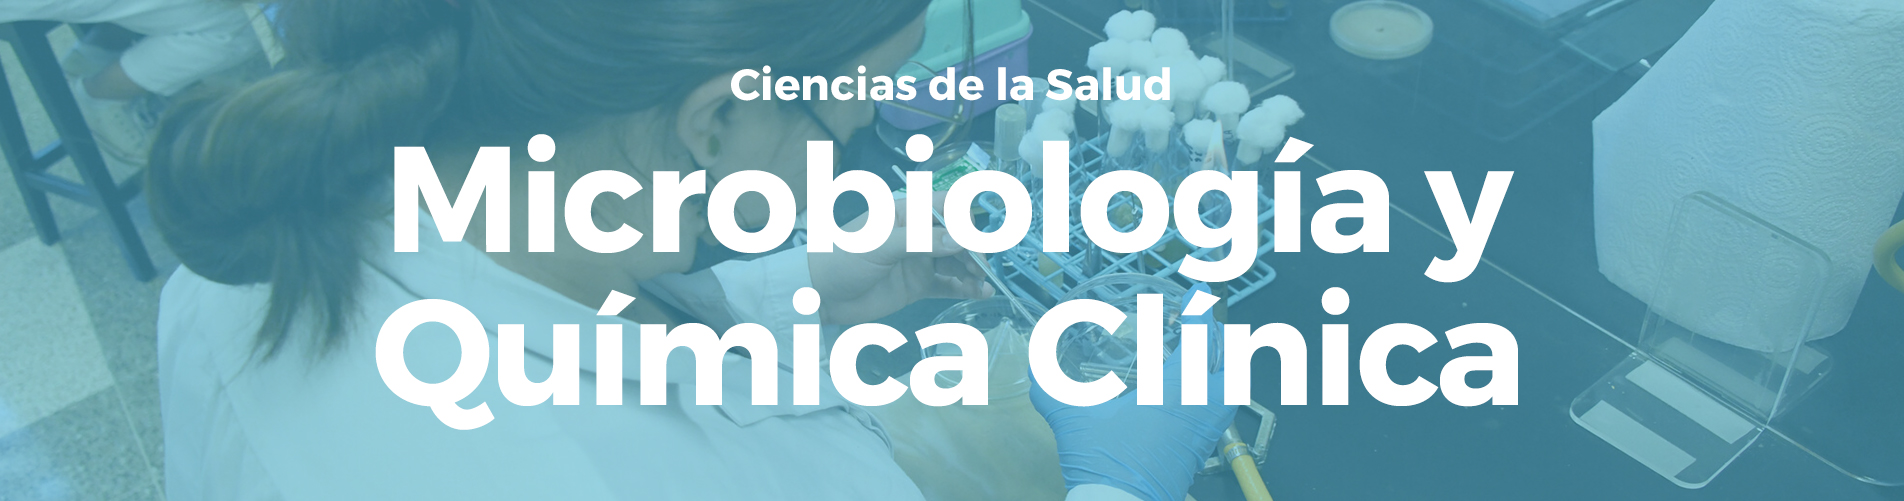 Microbiología y Química Clínica